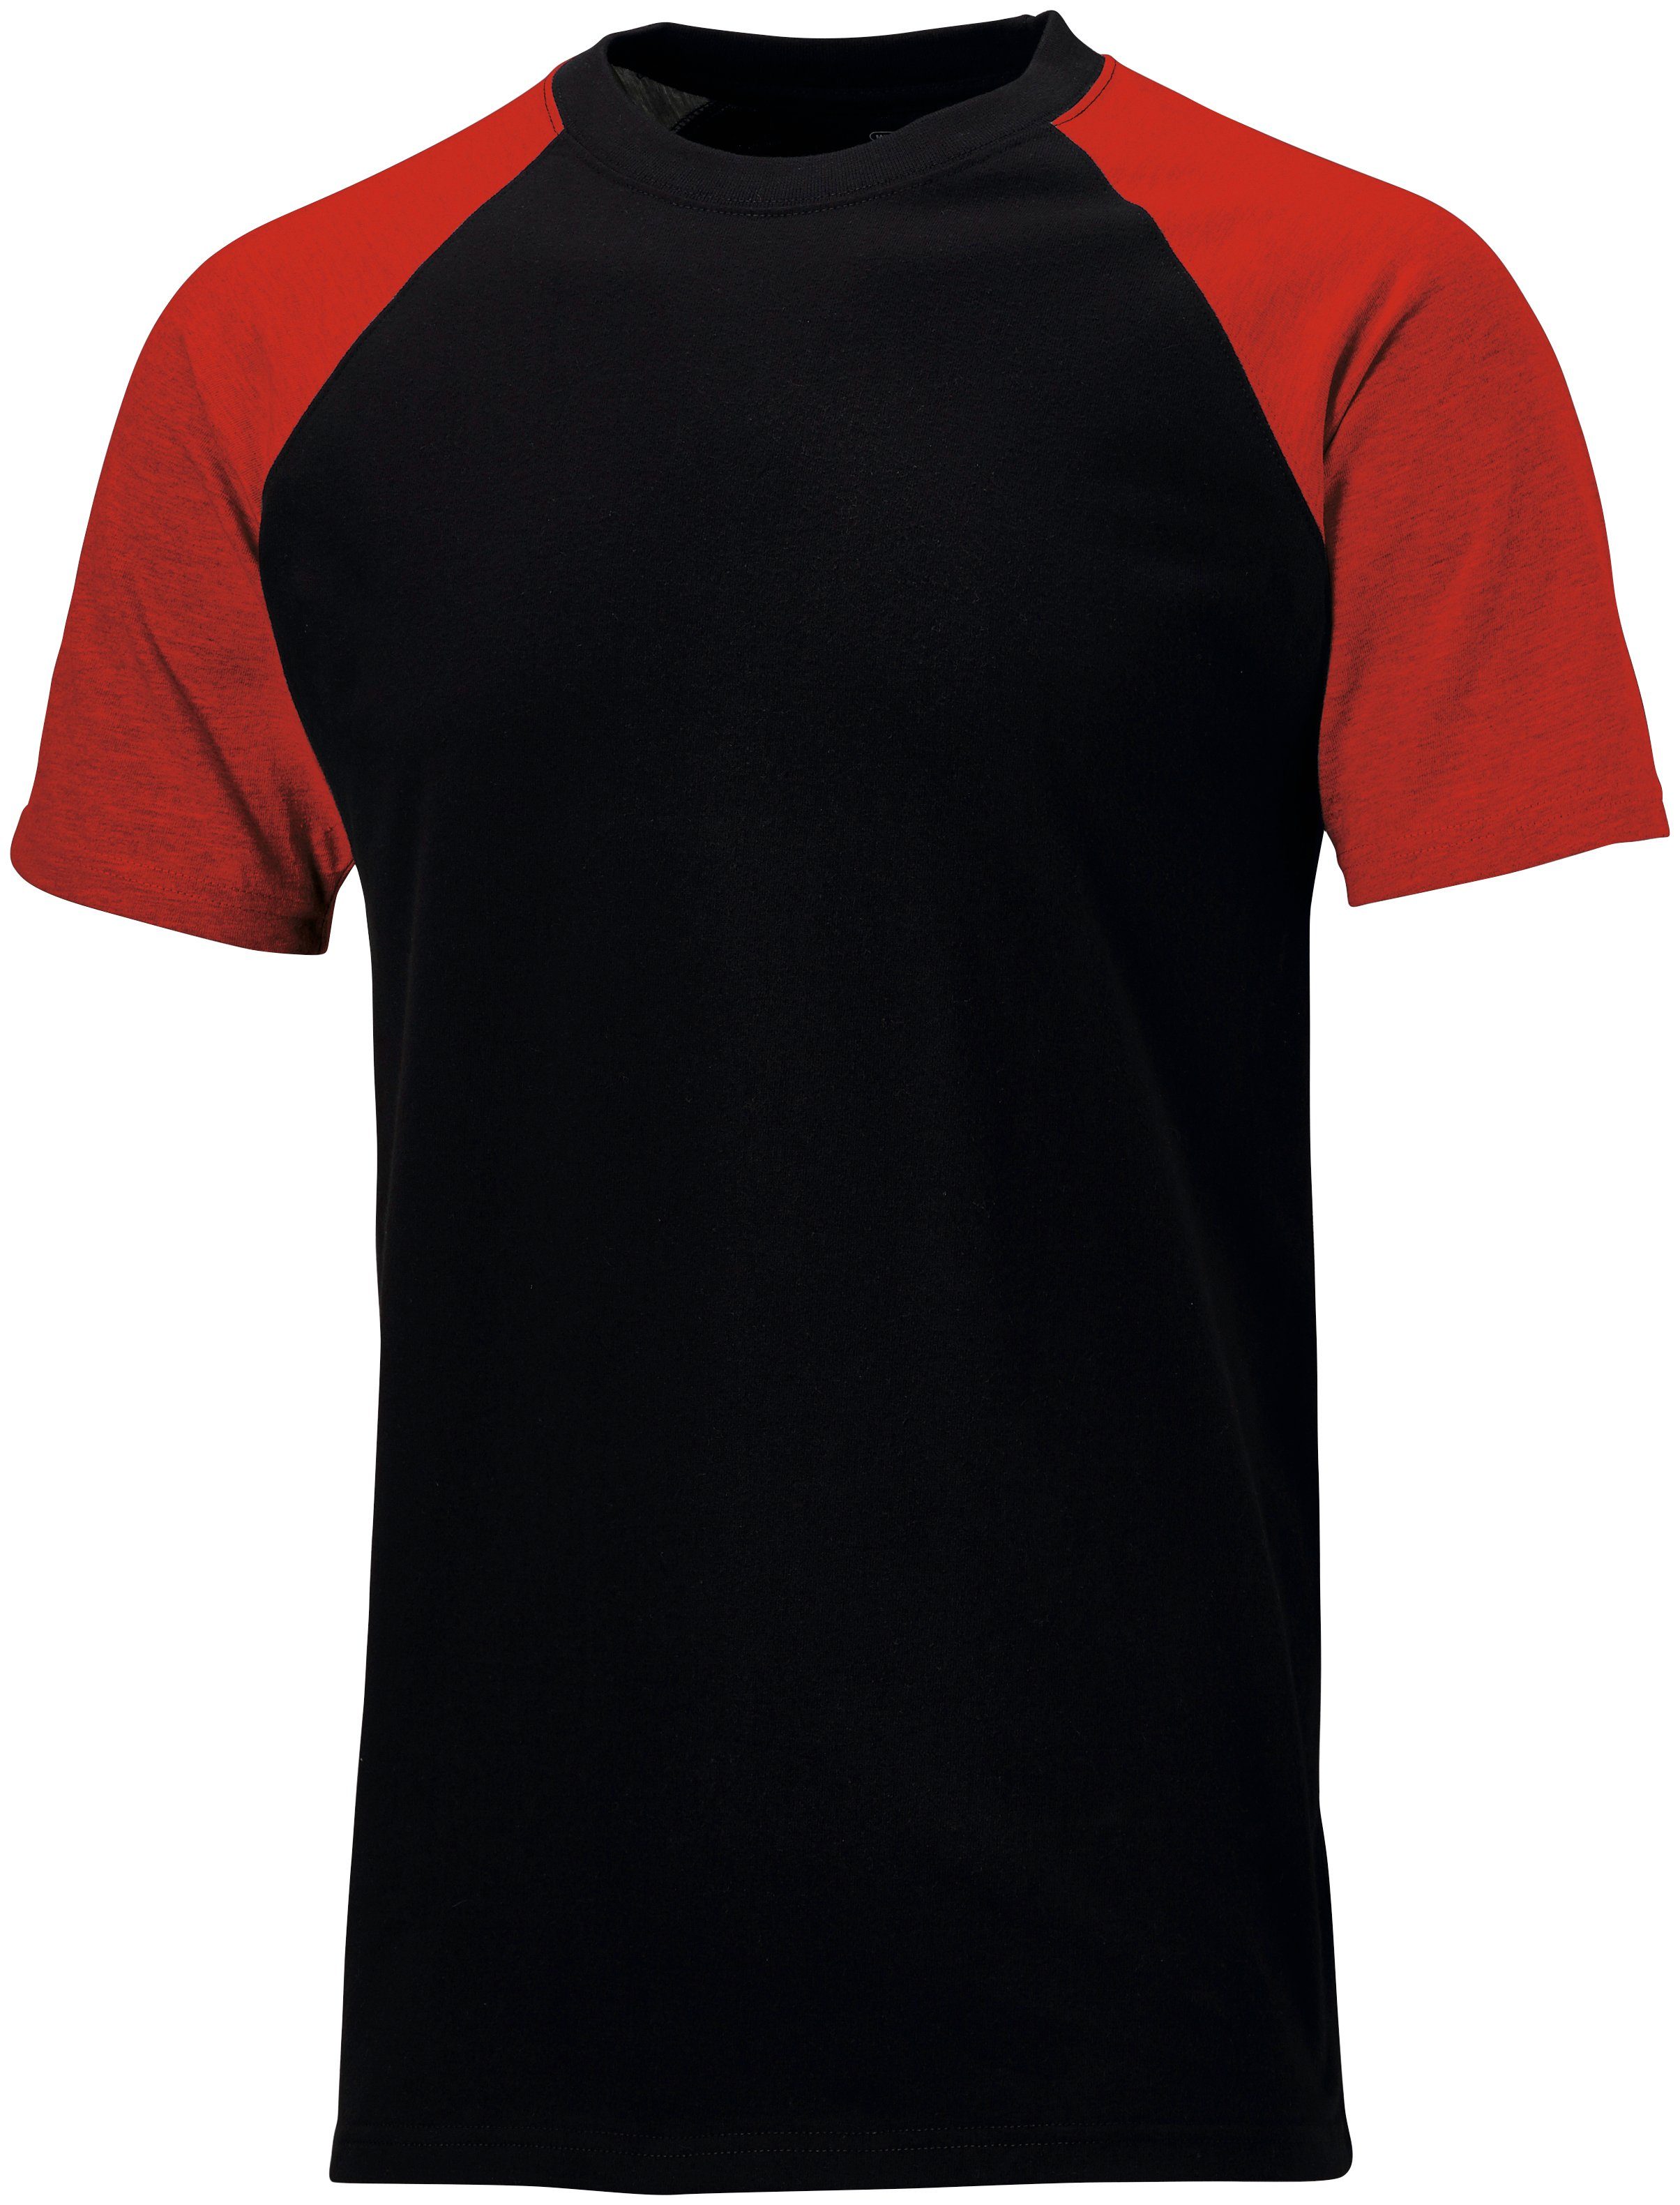 Dickies schwarz-rot T-Shirt - S Gr. 3XL